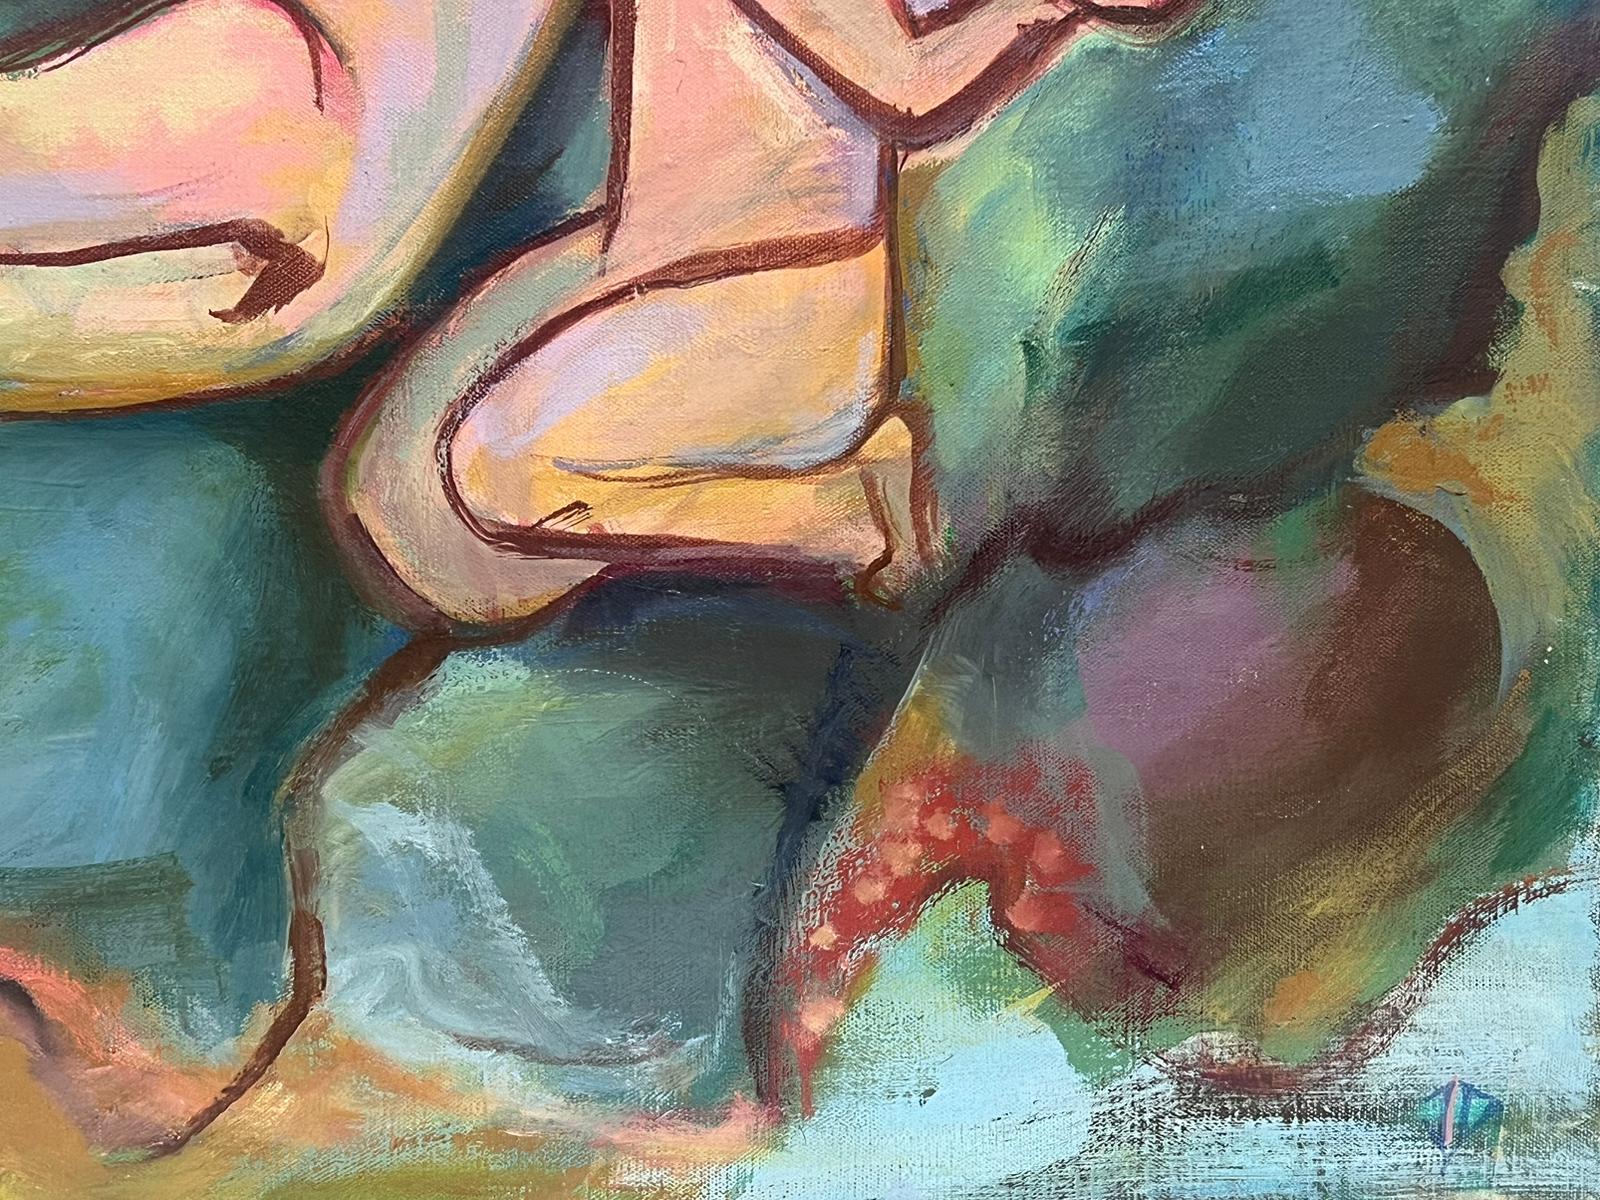 Énormes nus mythologiques à l'huile de style moderniste français des années 1950 sur la côte rocheuse - Moderne Painting par circle of Pablo Picasso